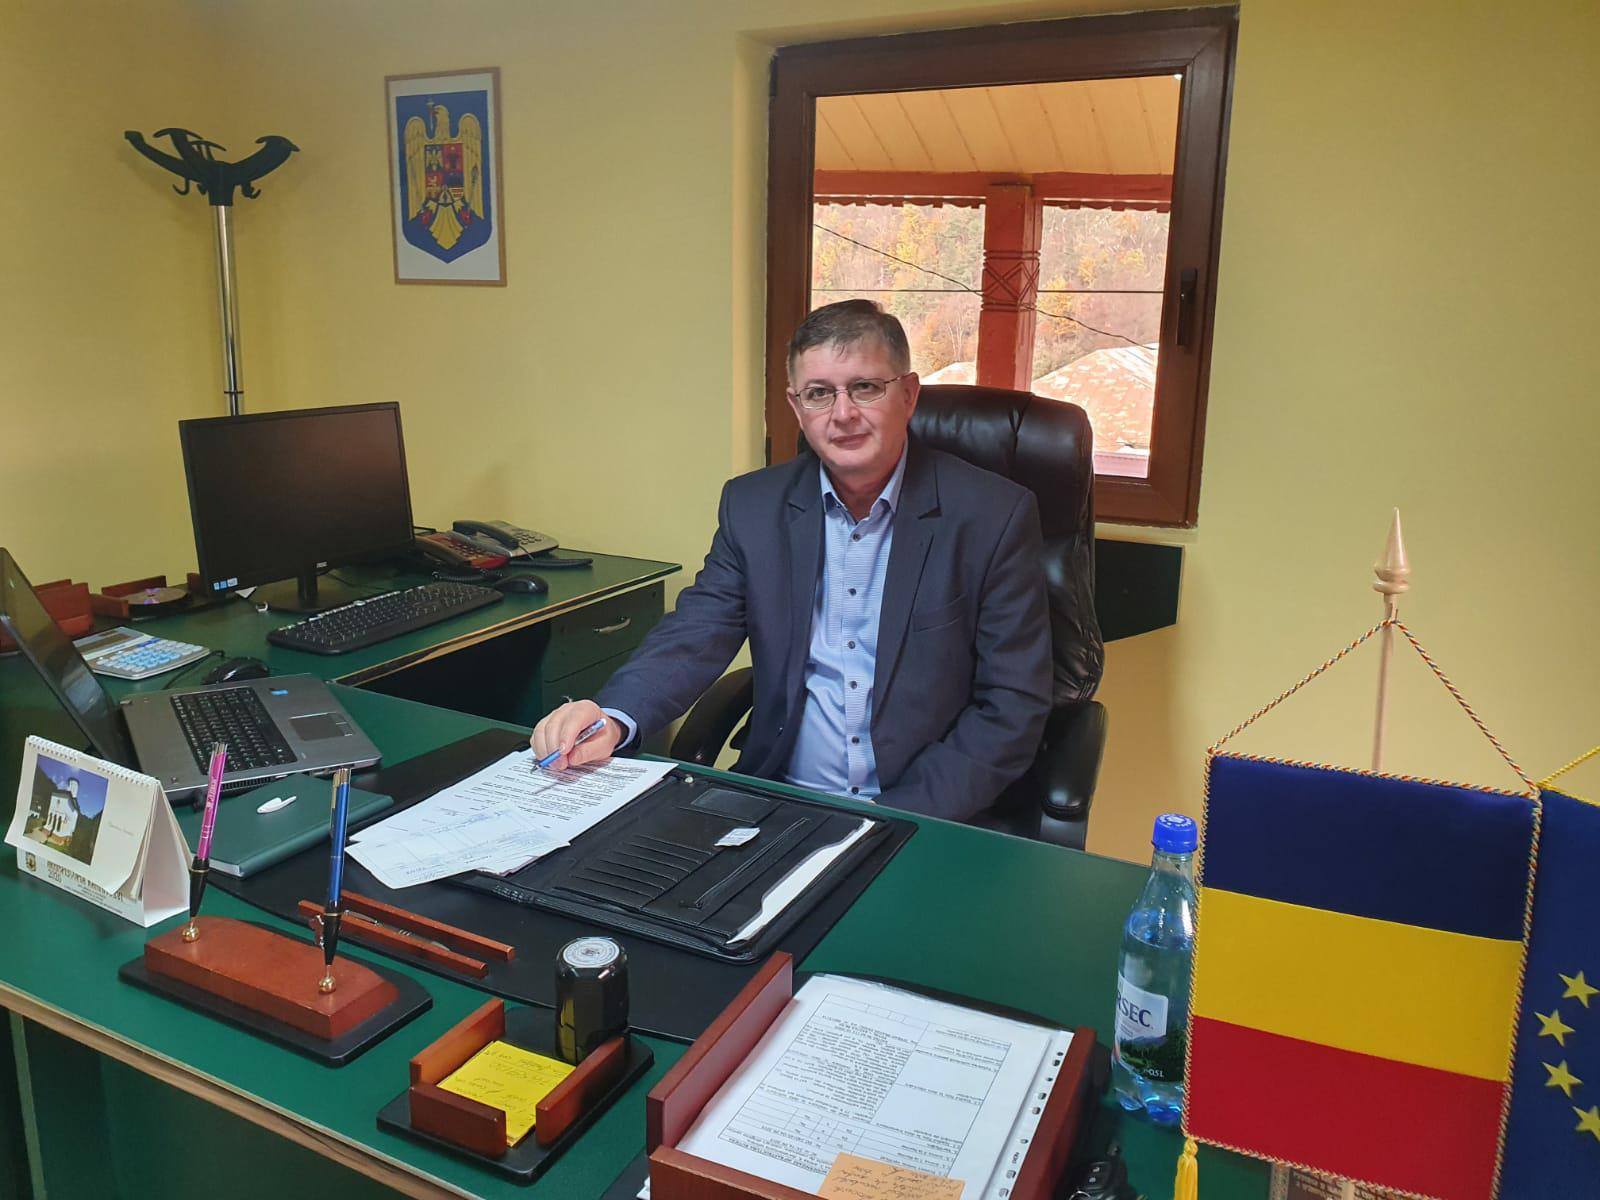 La Mălaia, administraţia locală acordă prioritate învăţământului şi culturii